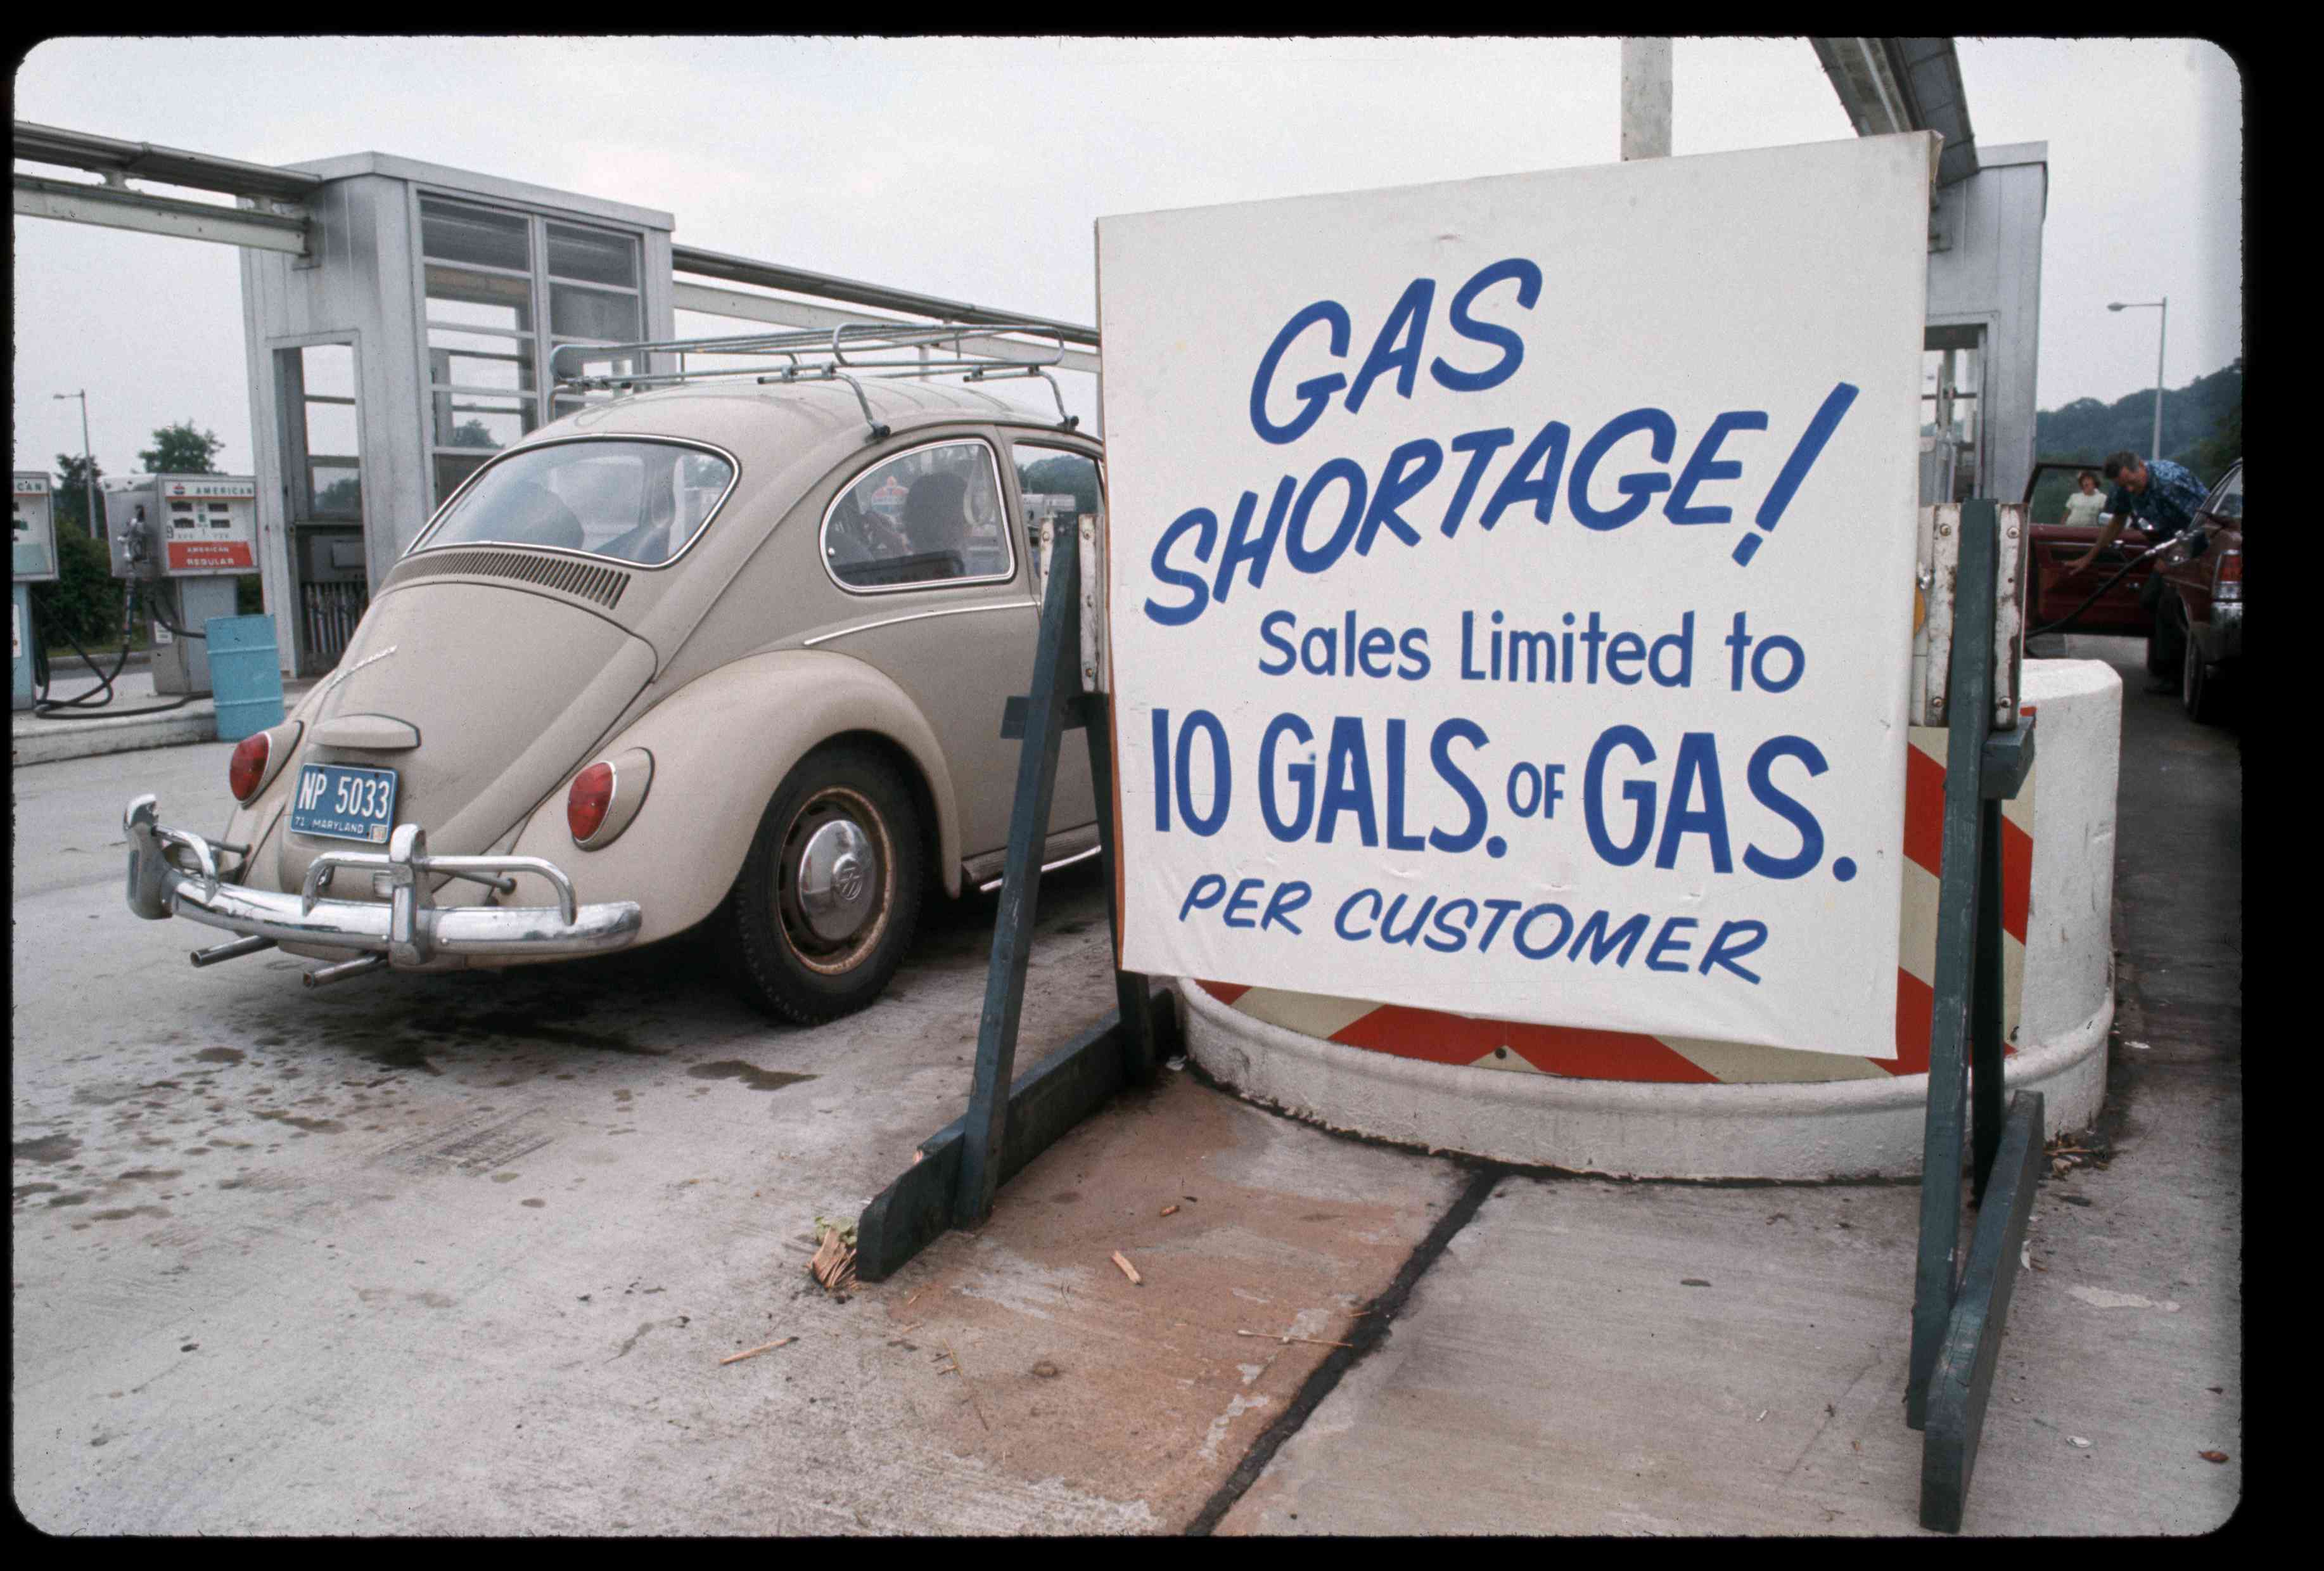 Gas shortage sign